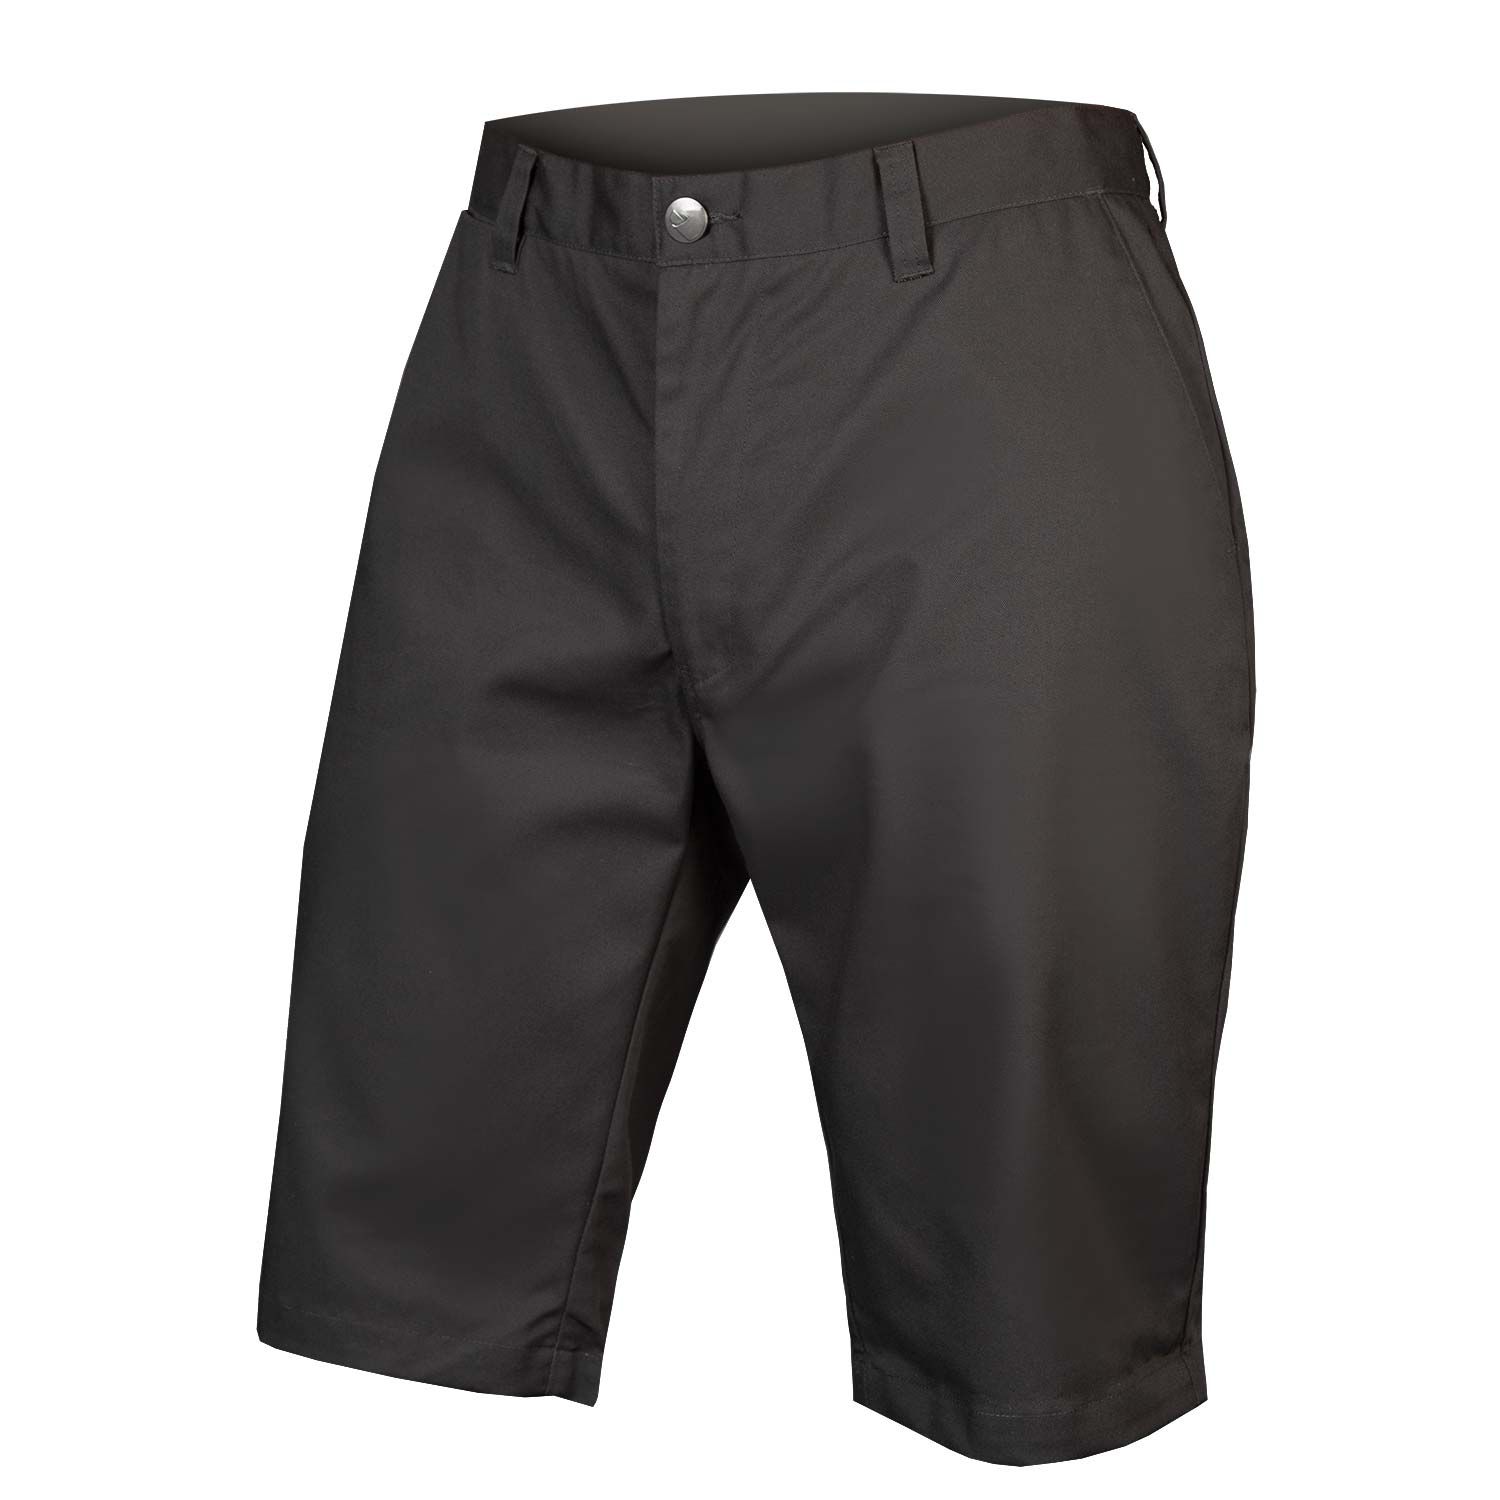 Endura Hummvee Chino Shorts With Liner - £59.49 | Shorts - Baggy Loose ...